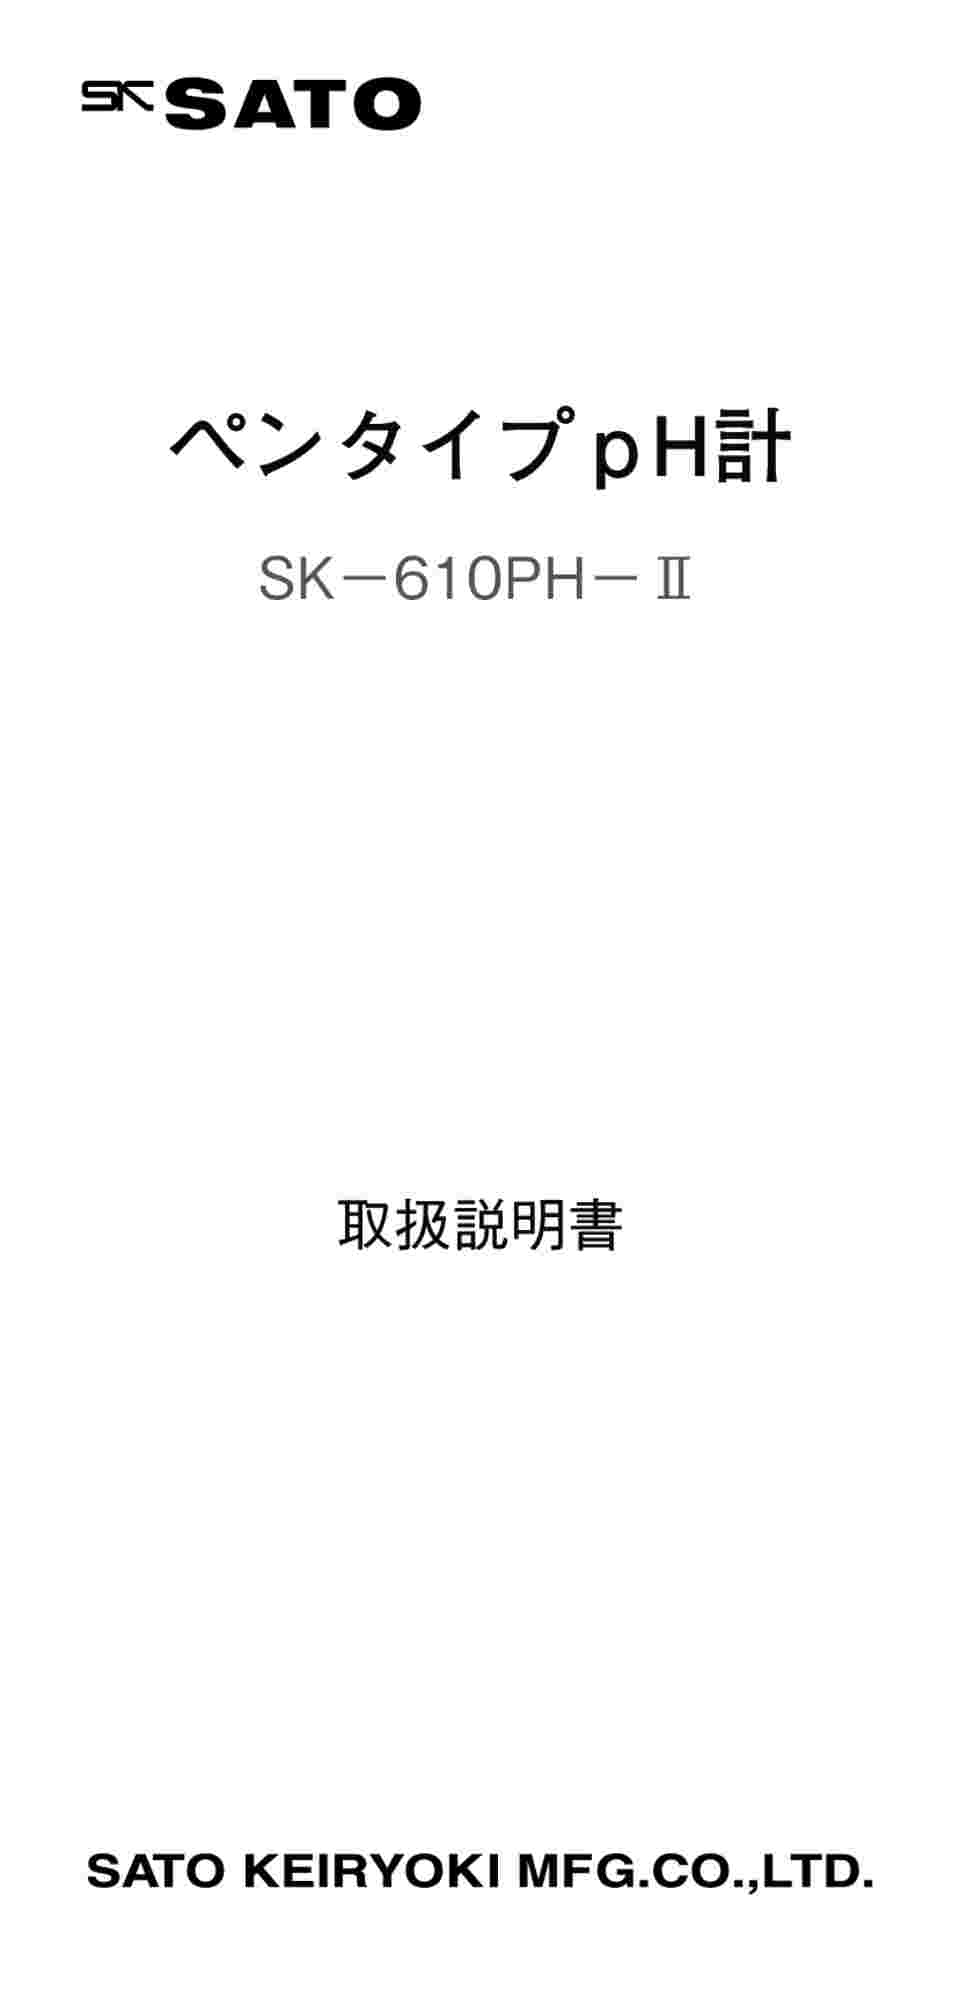 おしゃれ】 ペンタイプpH計 SK- 610PH-2, 40% OFF